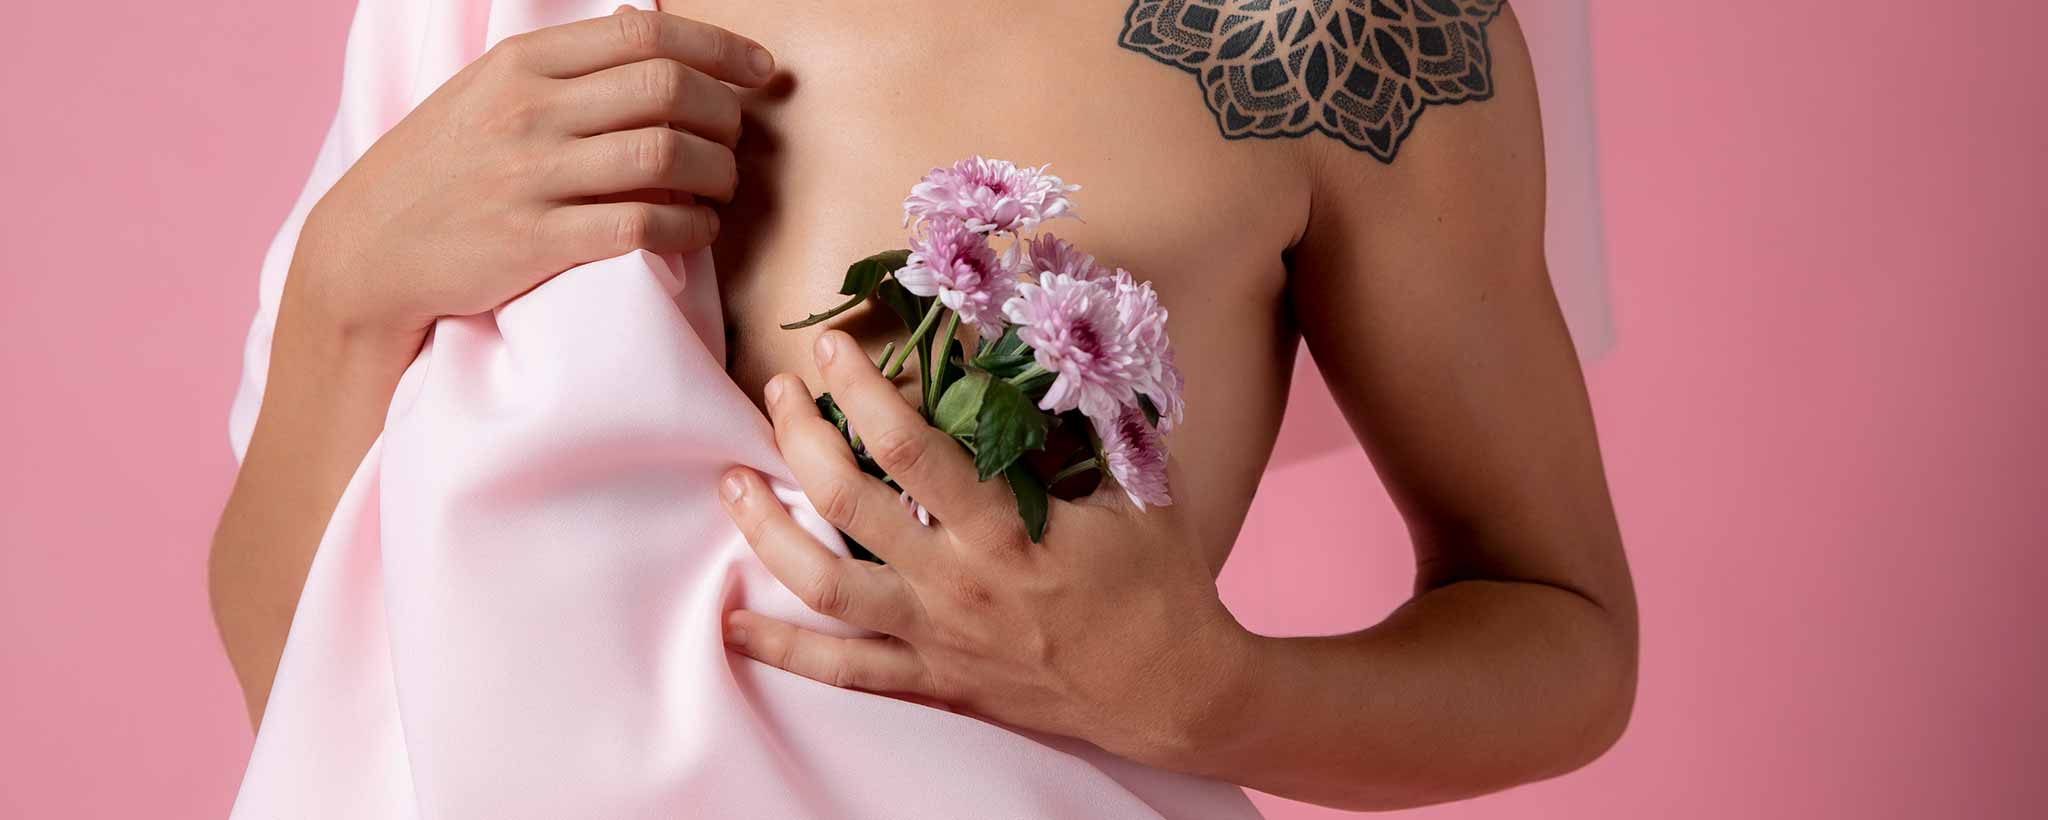 'Post-mastectomy female holding flowers'